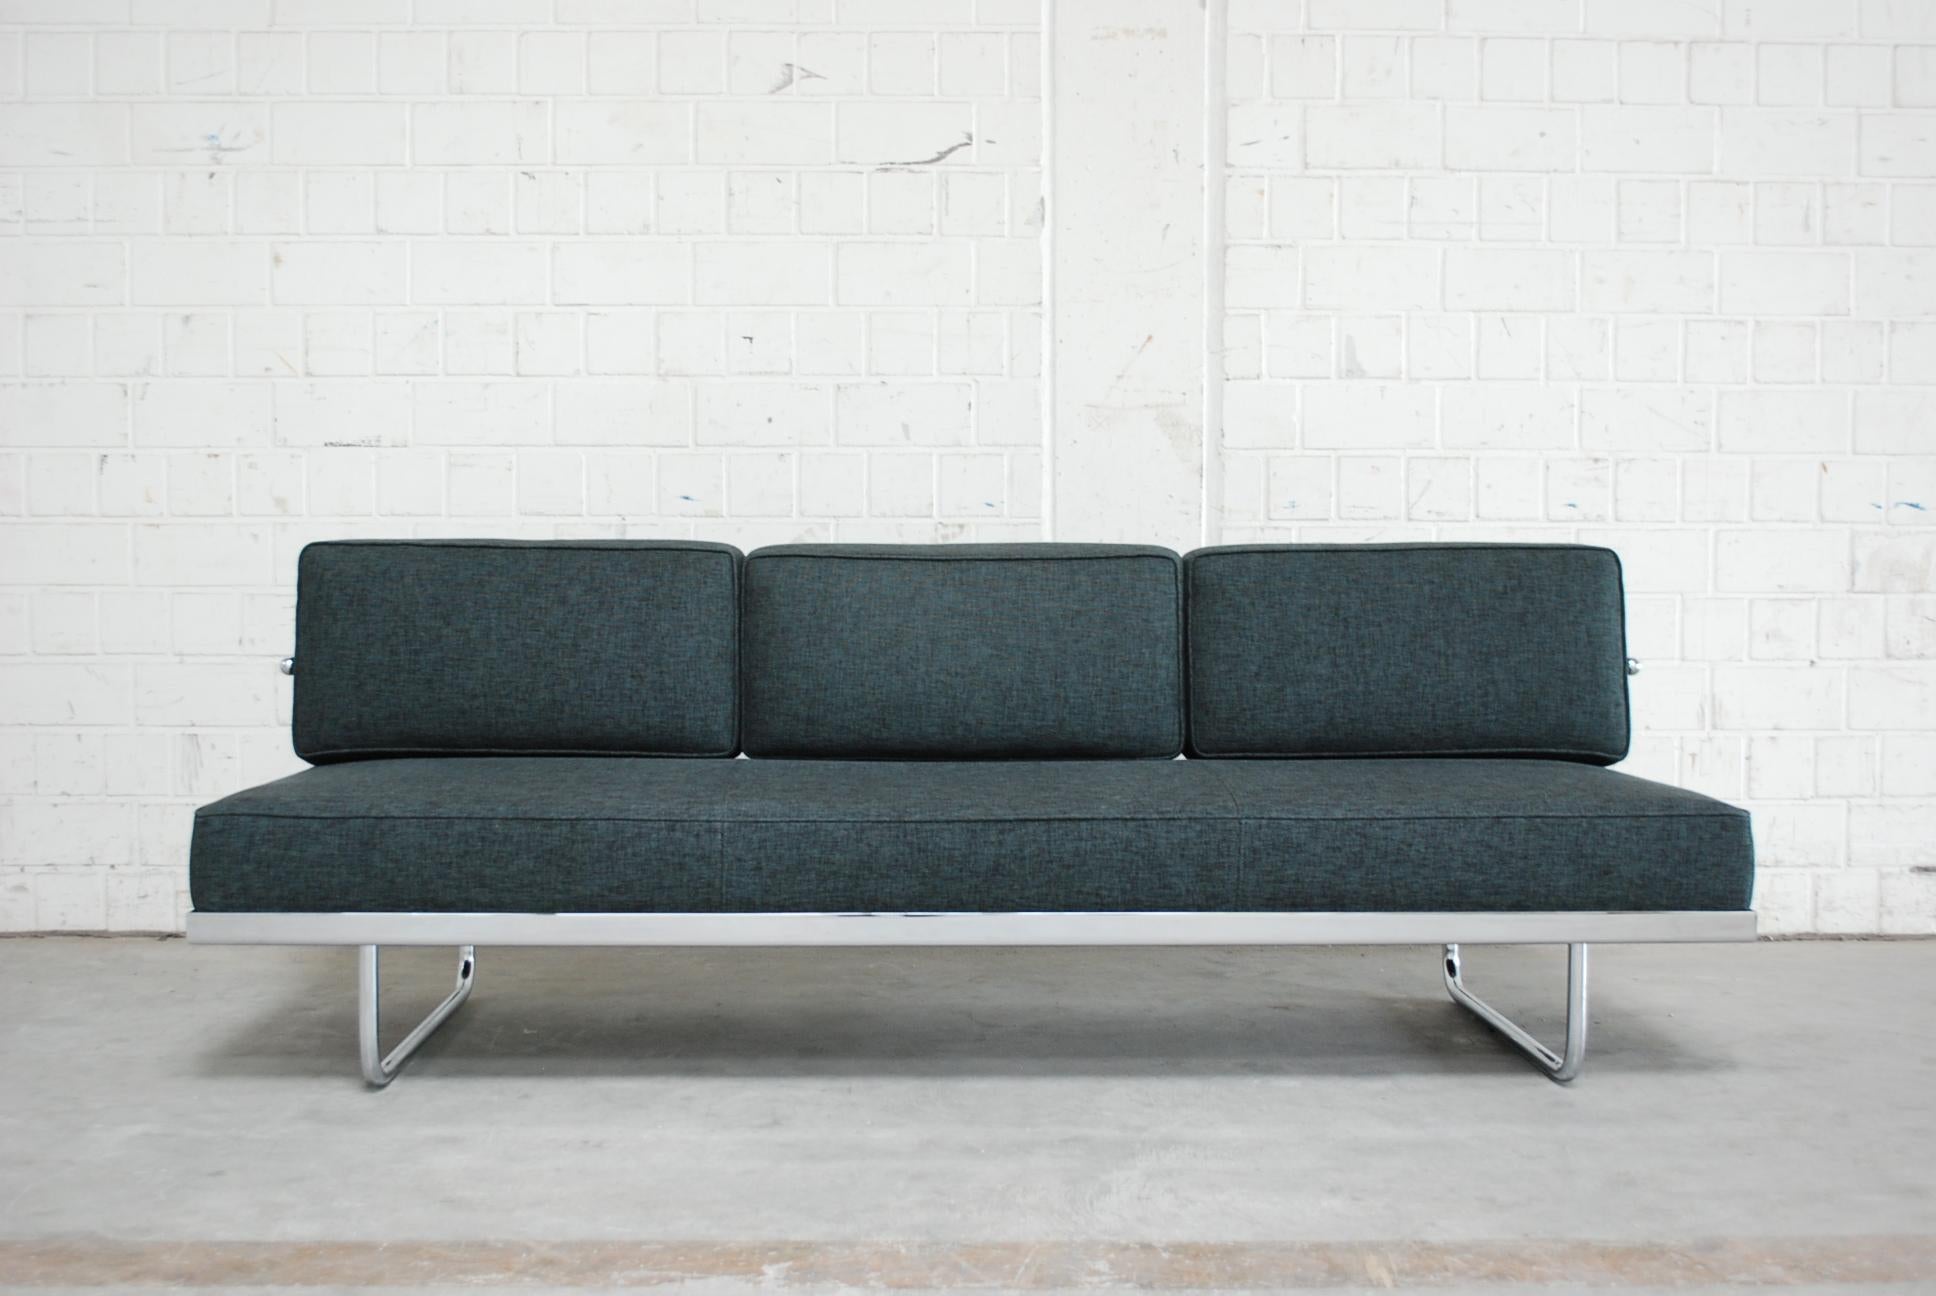 Dieses dreisitzige Sofa LC5 F wurde von Le Corbusier 1934 entworfen und von Cassina 1998 hergestellt.
Das Gestell besteht aus verchromtem Stahlrohr und ist mit einem schönen grünen Stoff von Kvadrat Halingdal bezogen.
Die Rückenkissen können mit